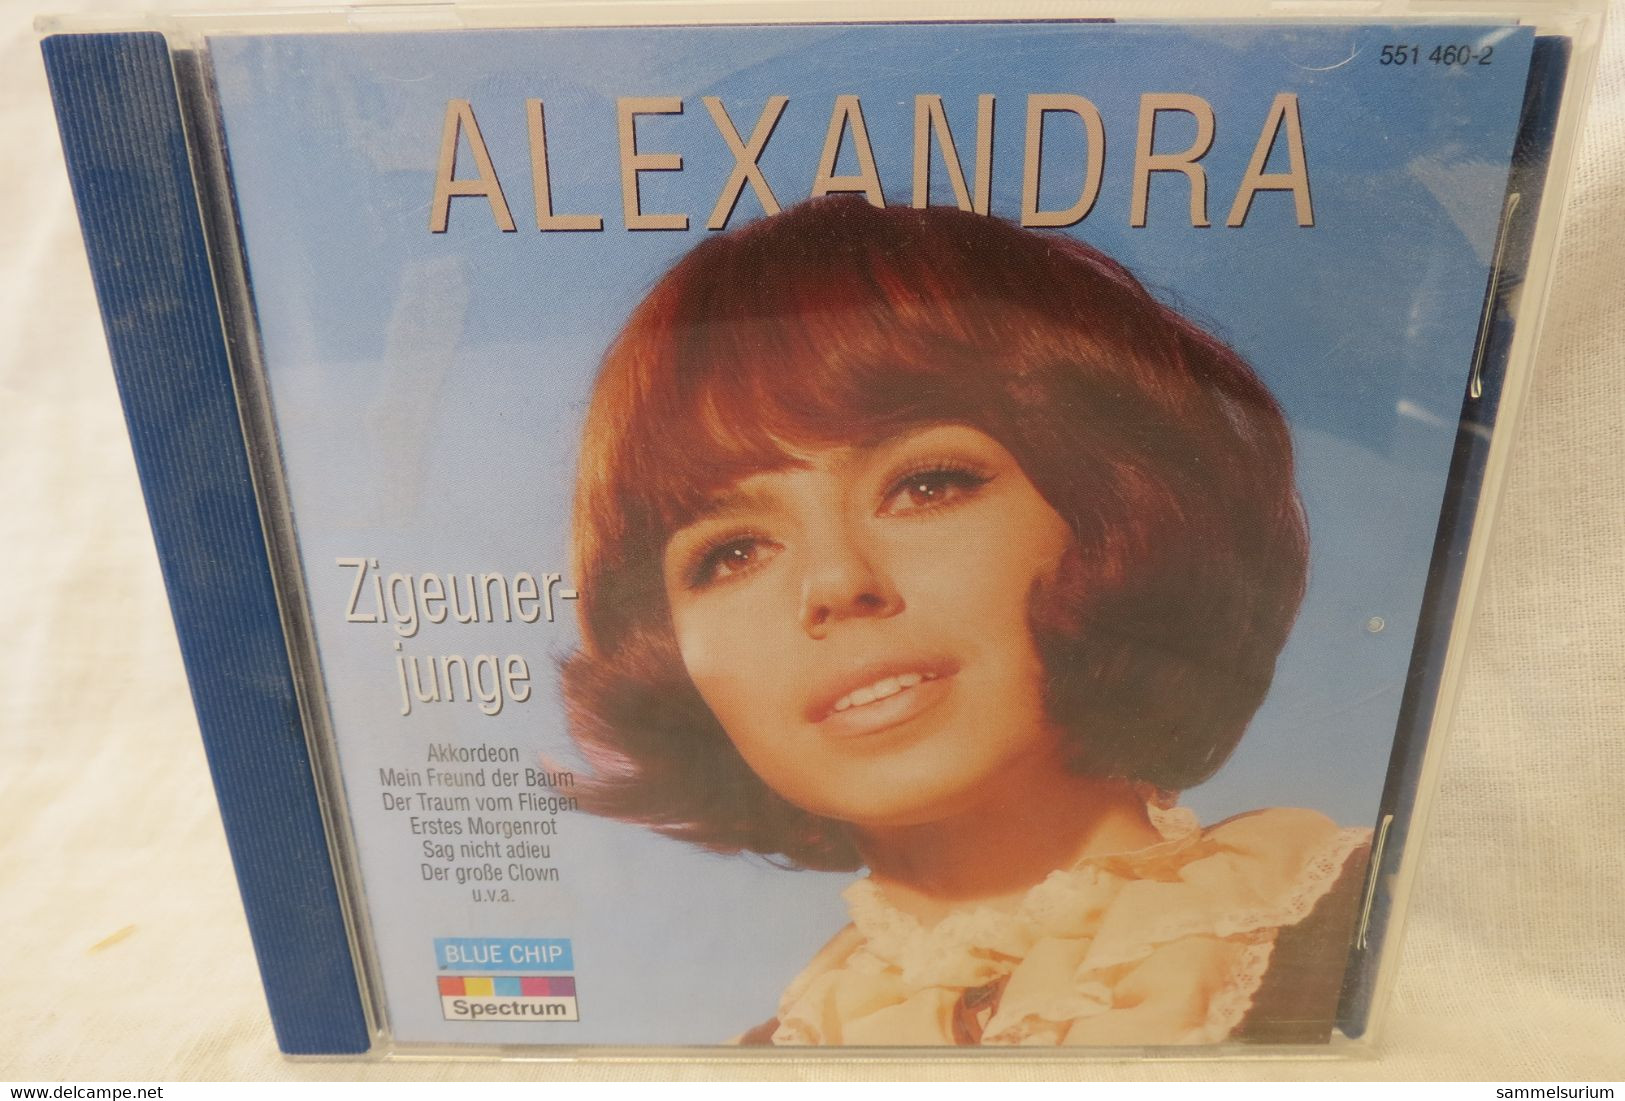 CD Alexandra "Zigeunerjunge" - Other - German Music